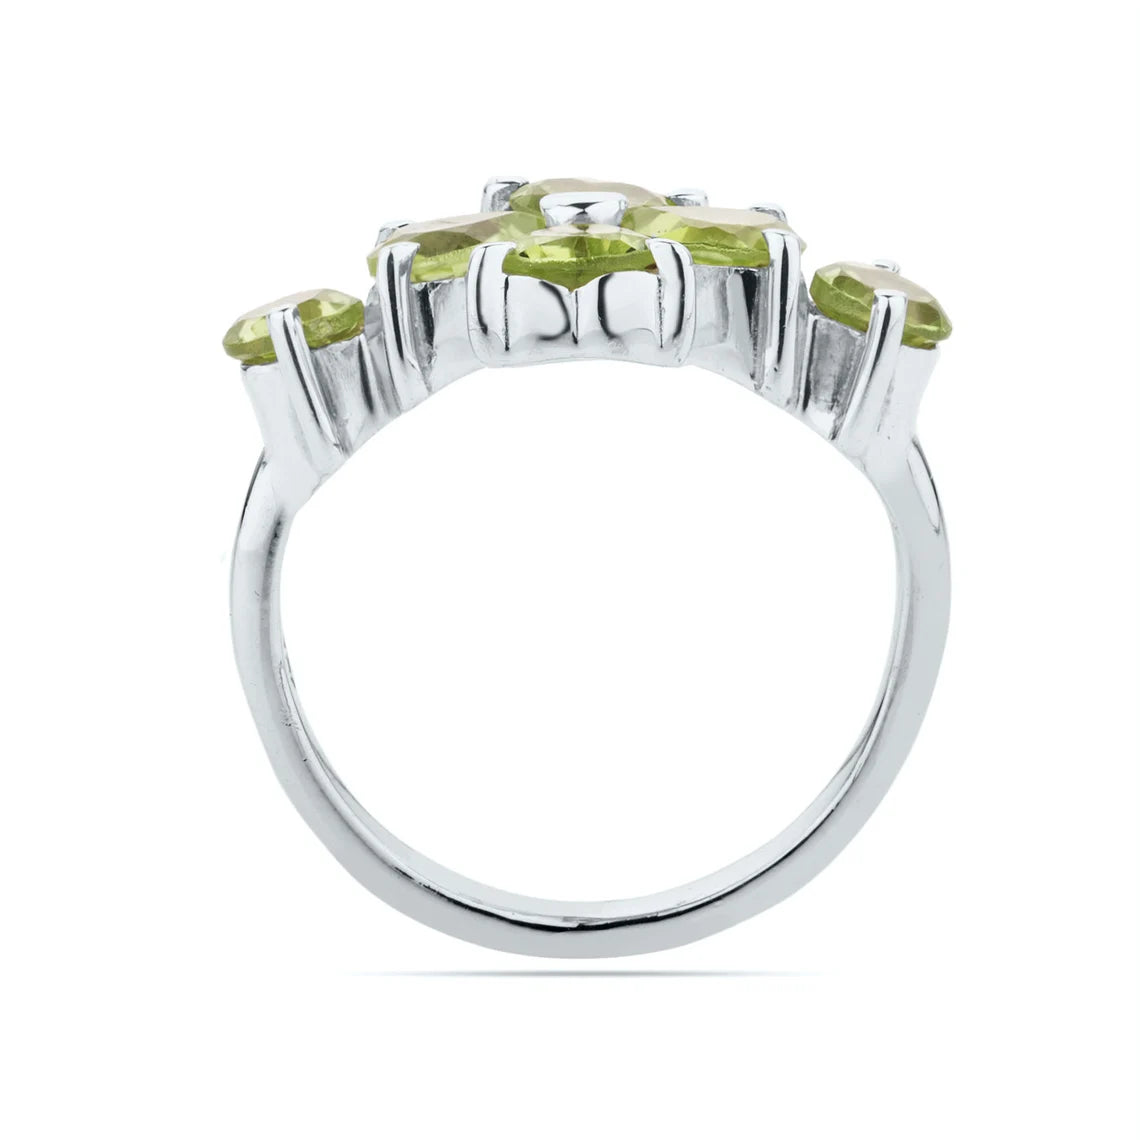 Natural Peridot 925 Sterling Silver Prong Ring,Multi Peridot Gemstone Ring